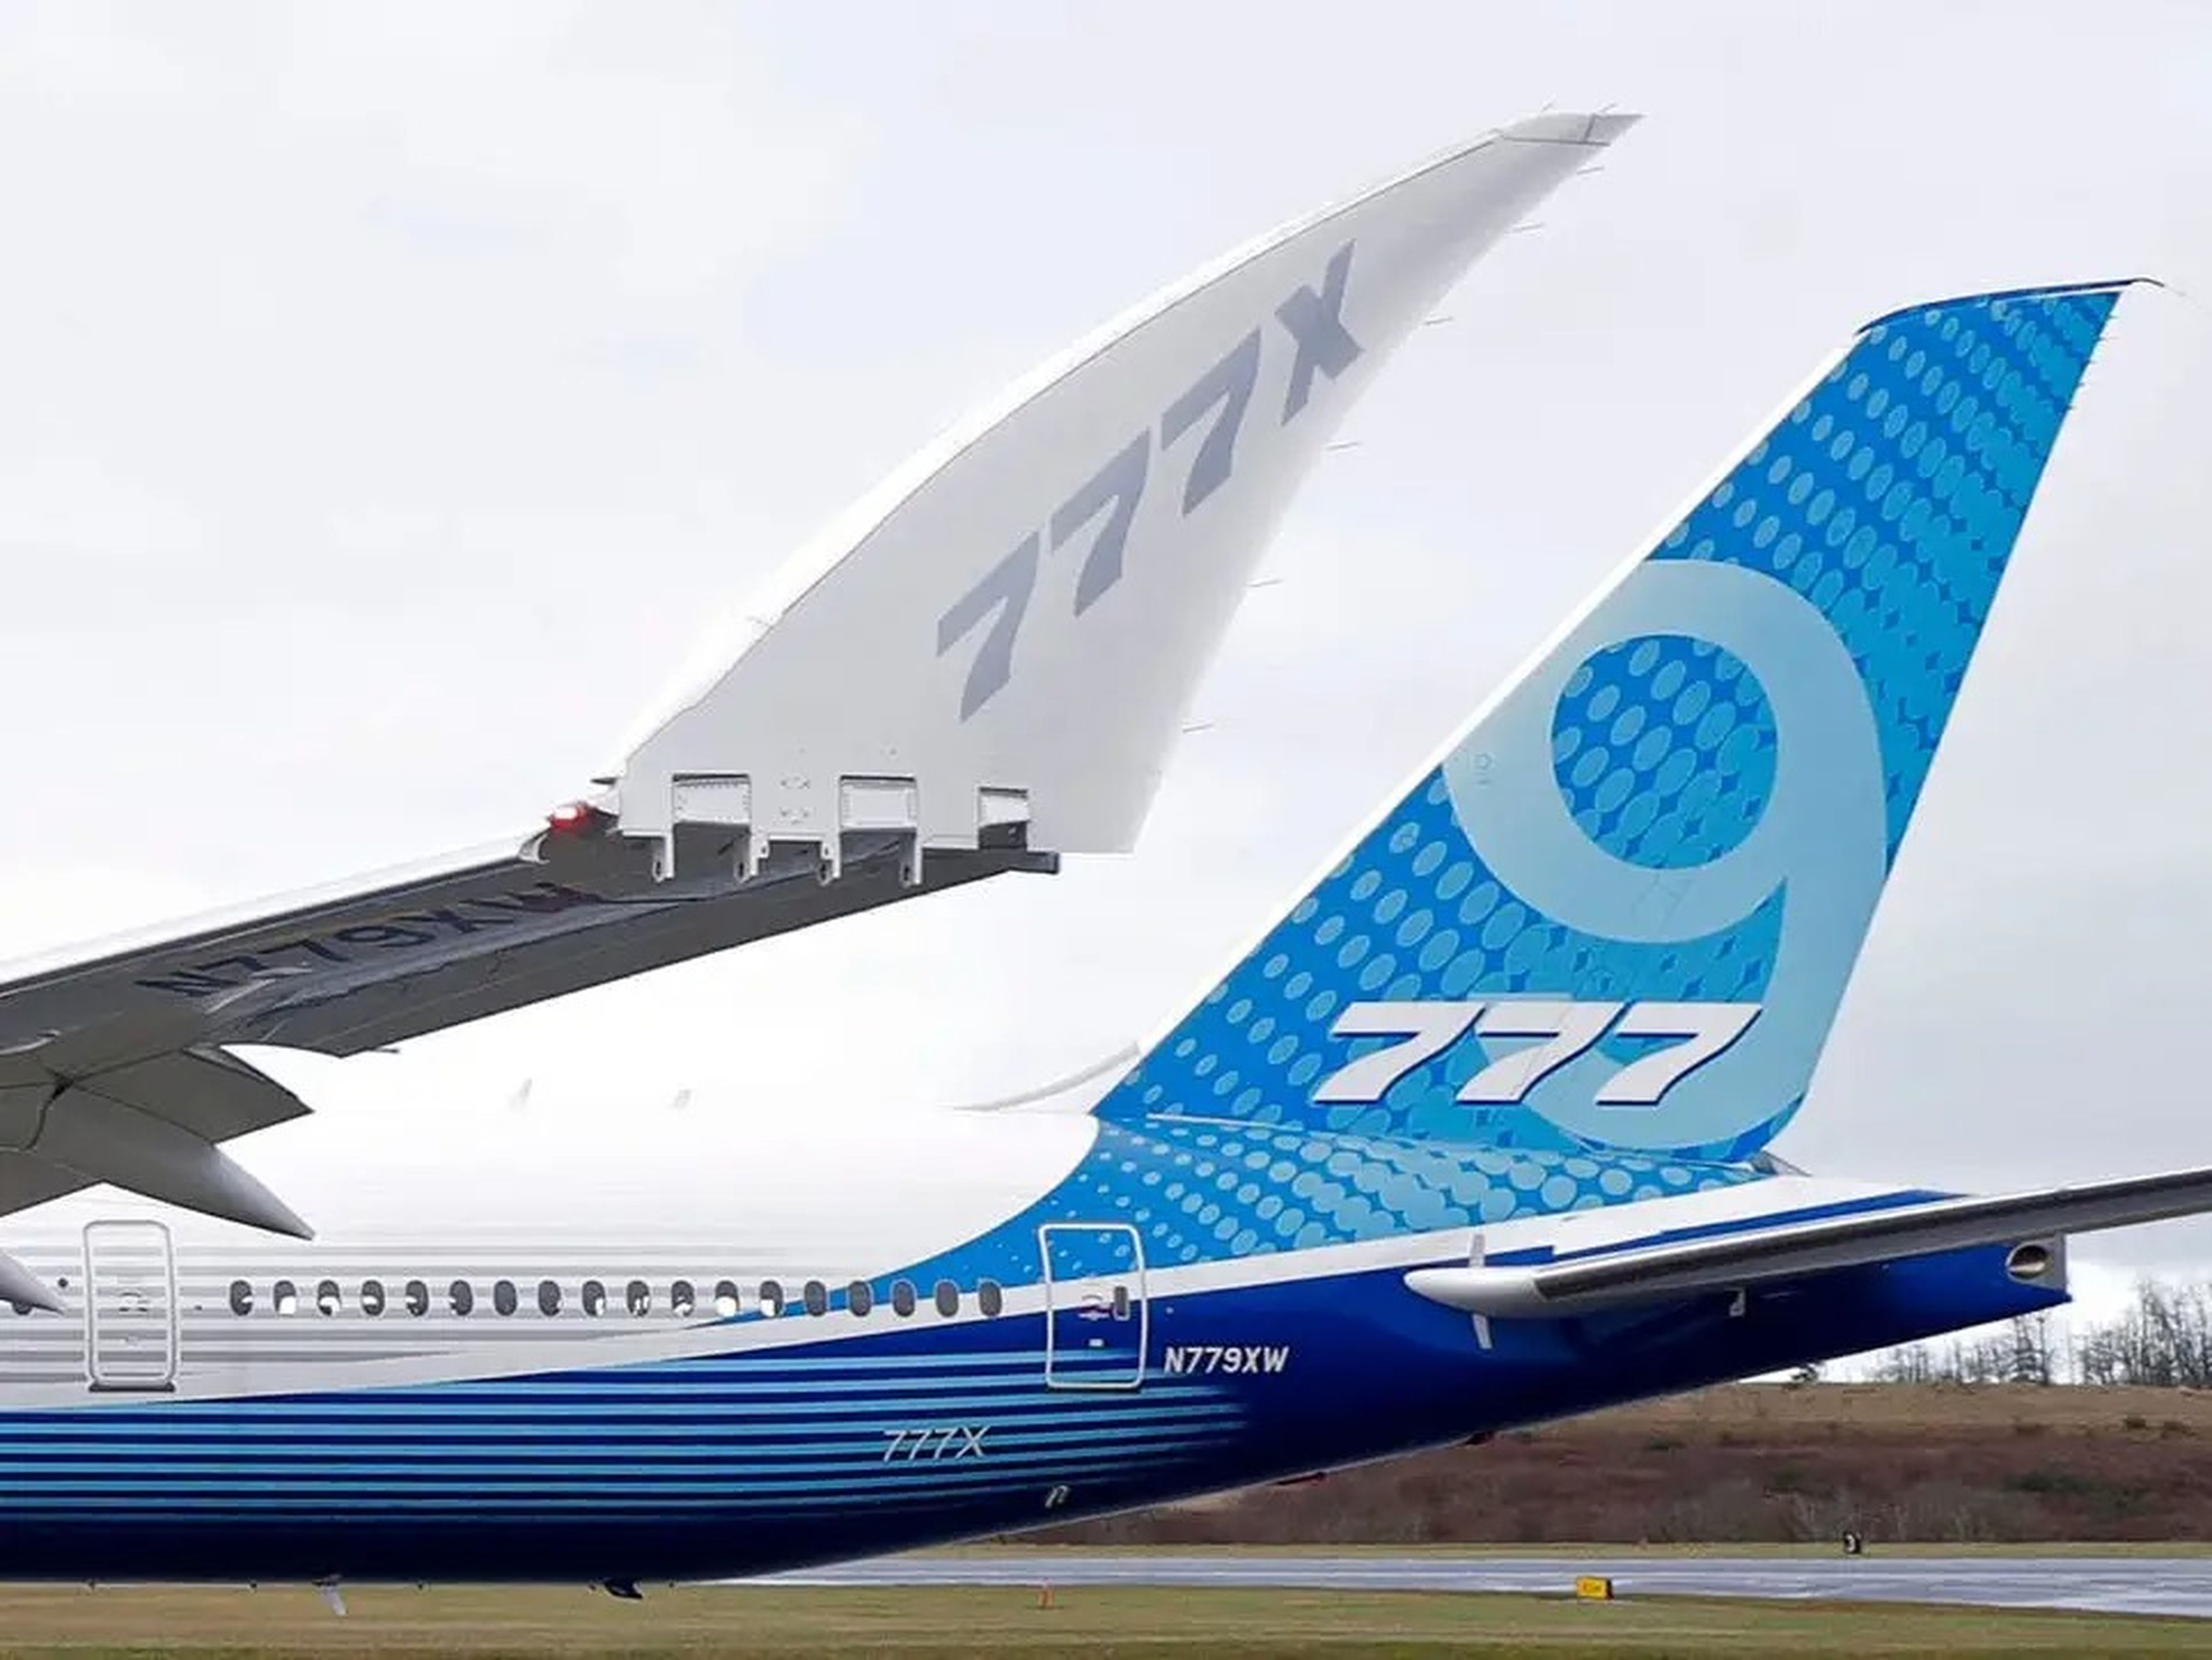 El Boeing 777X tiene unas puntas de ala plegables únicas que le permiten caber en el mismo espacio de la puerta de embarque del aeropuerto que su predecesor 777.